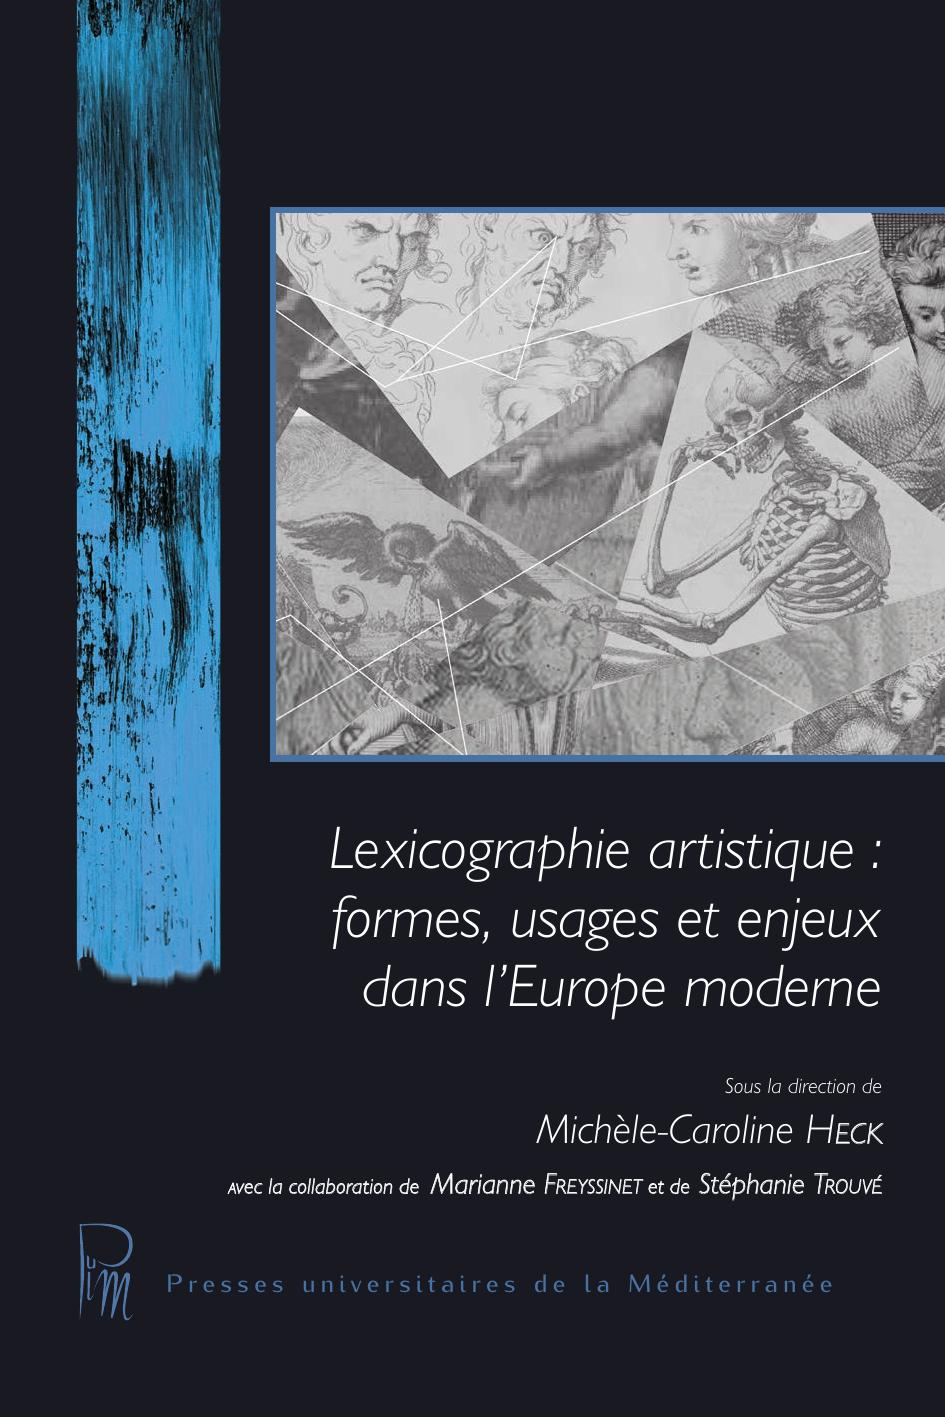 Lexicographie artistique 2017